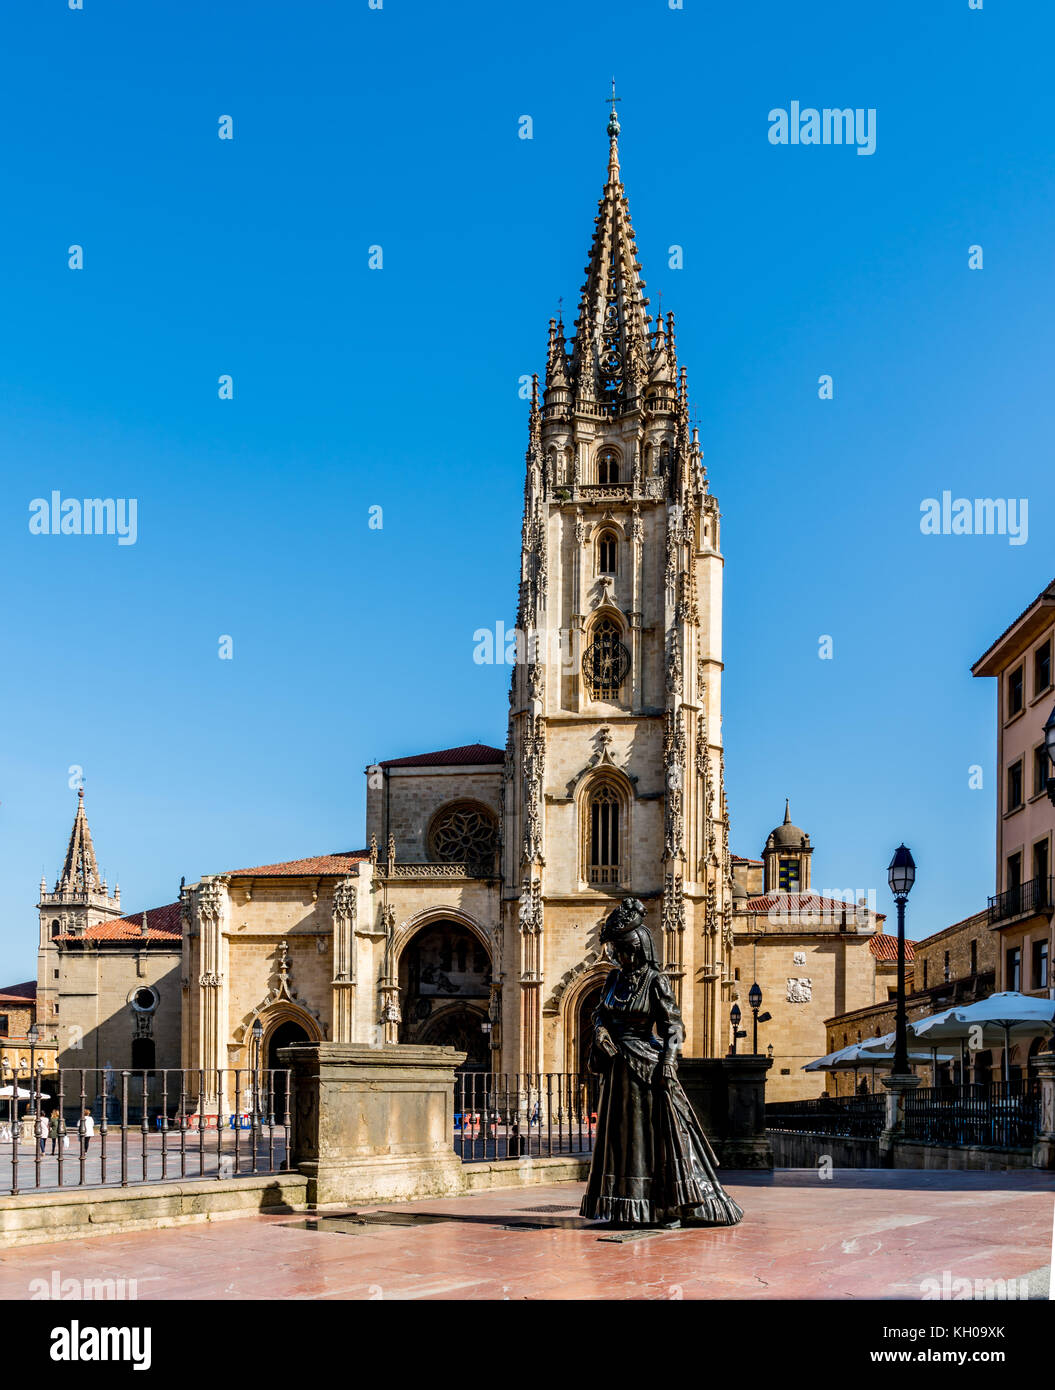 La cathédrale d'Oviedo en Espagne l'église originale a été construit en 781 AD et la tour a été ajoutée en 1528. Banque D'Images